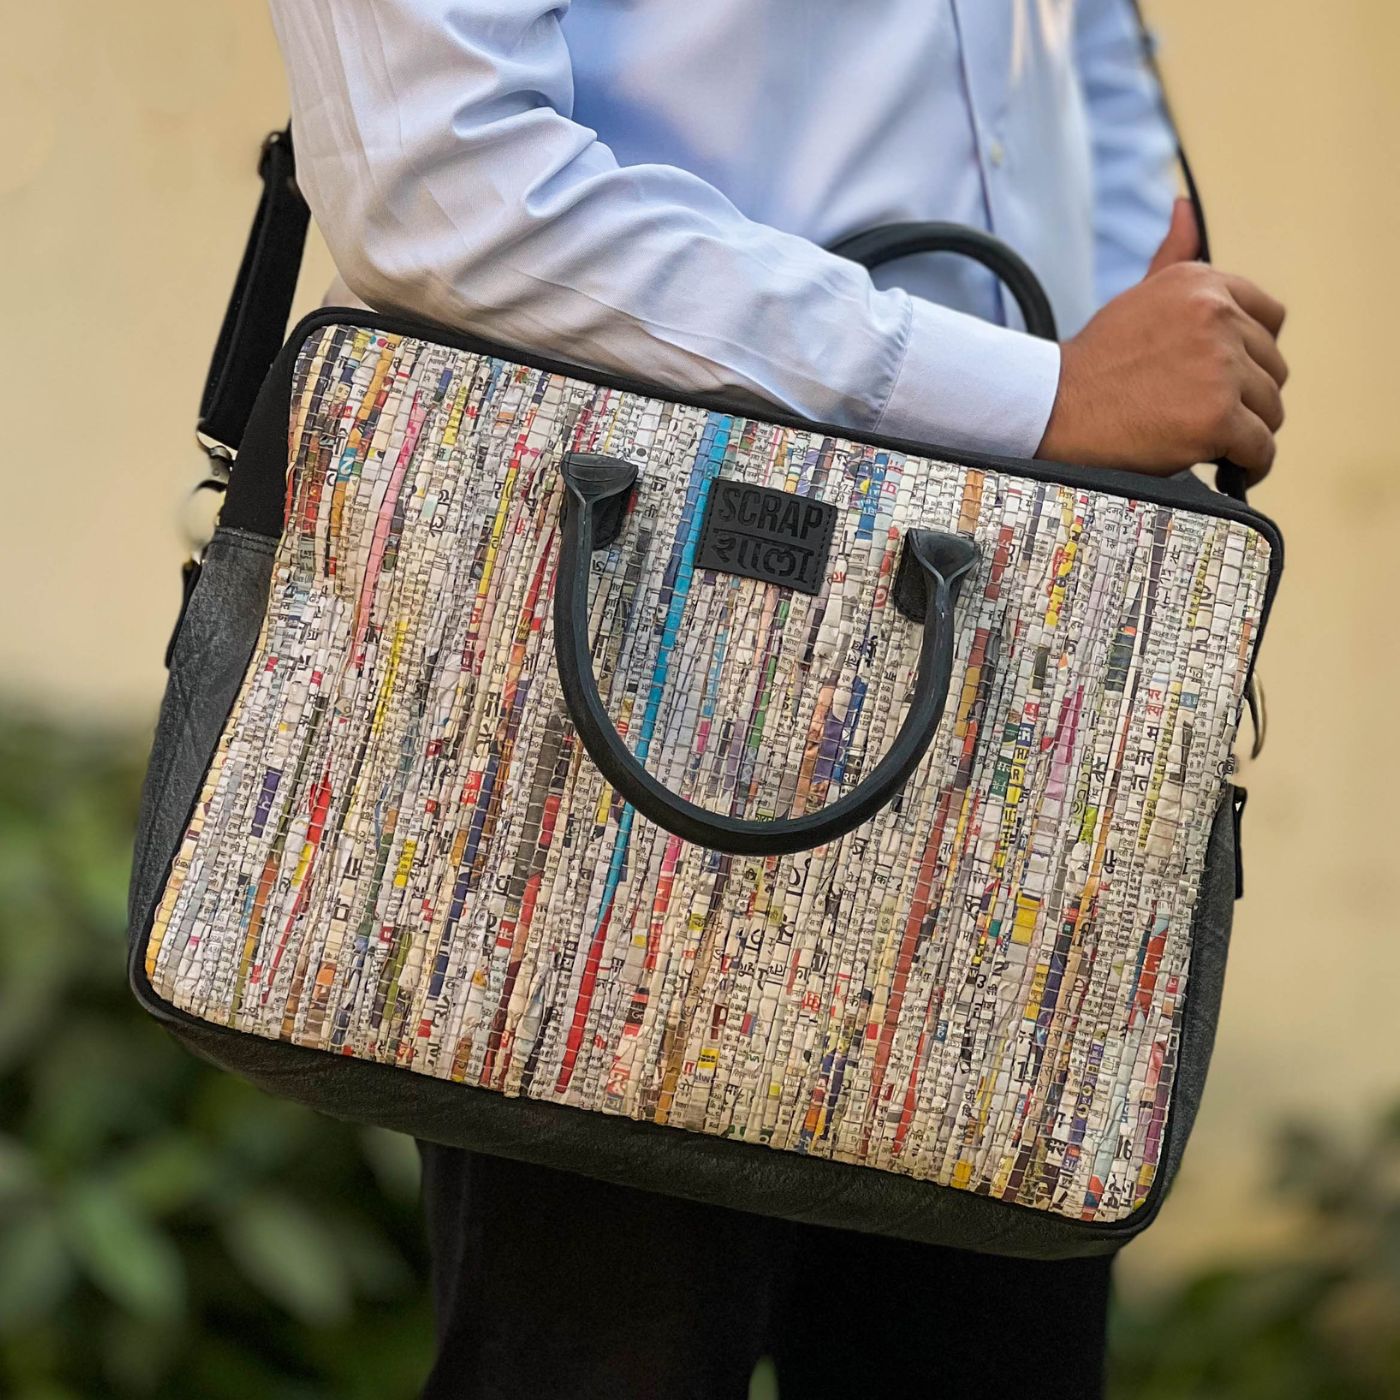 handloom bags | Bag patterns to sew, Bags, Bag pattern